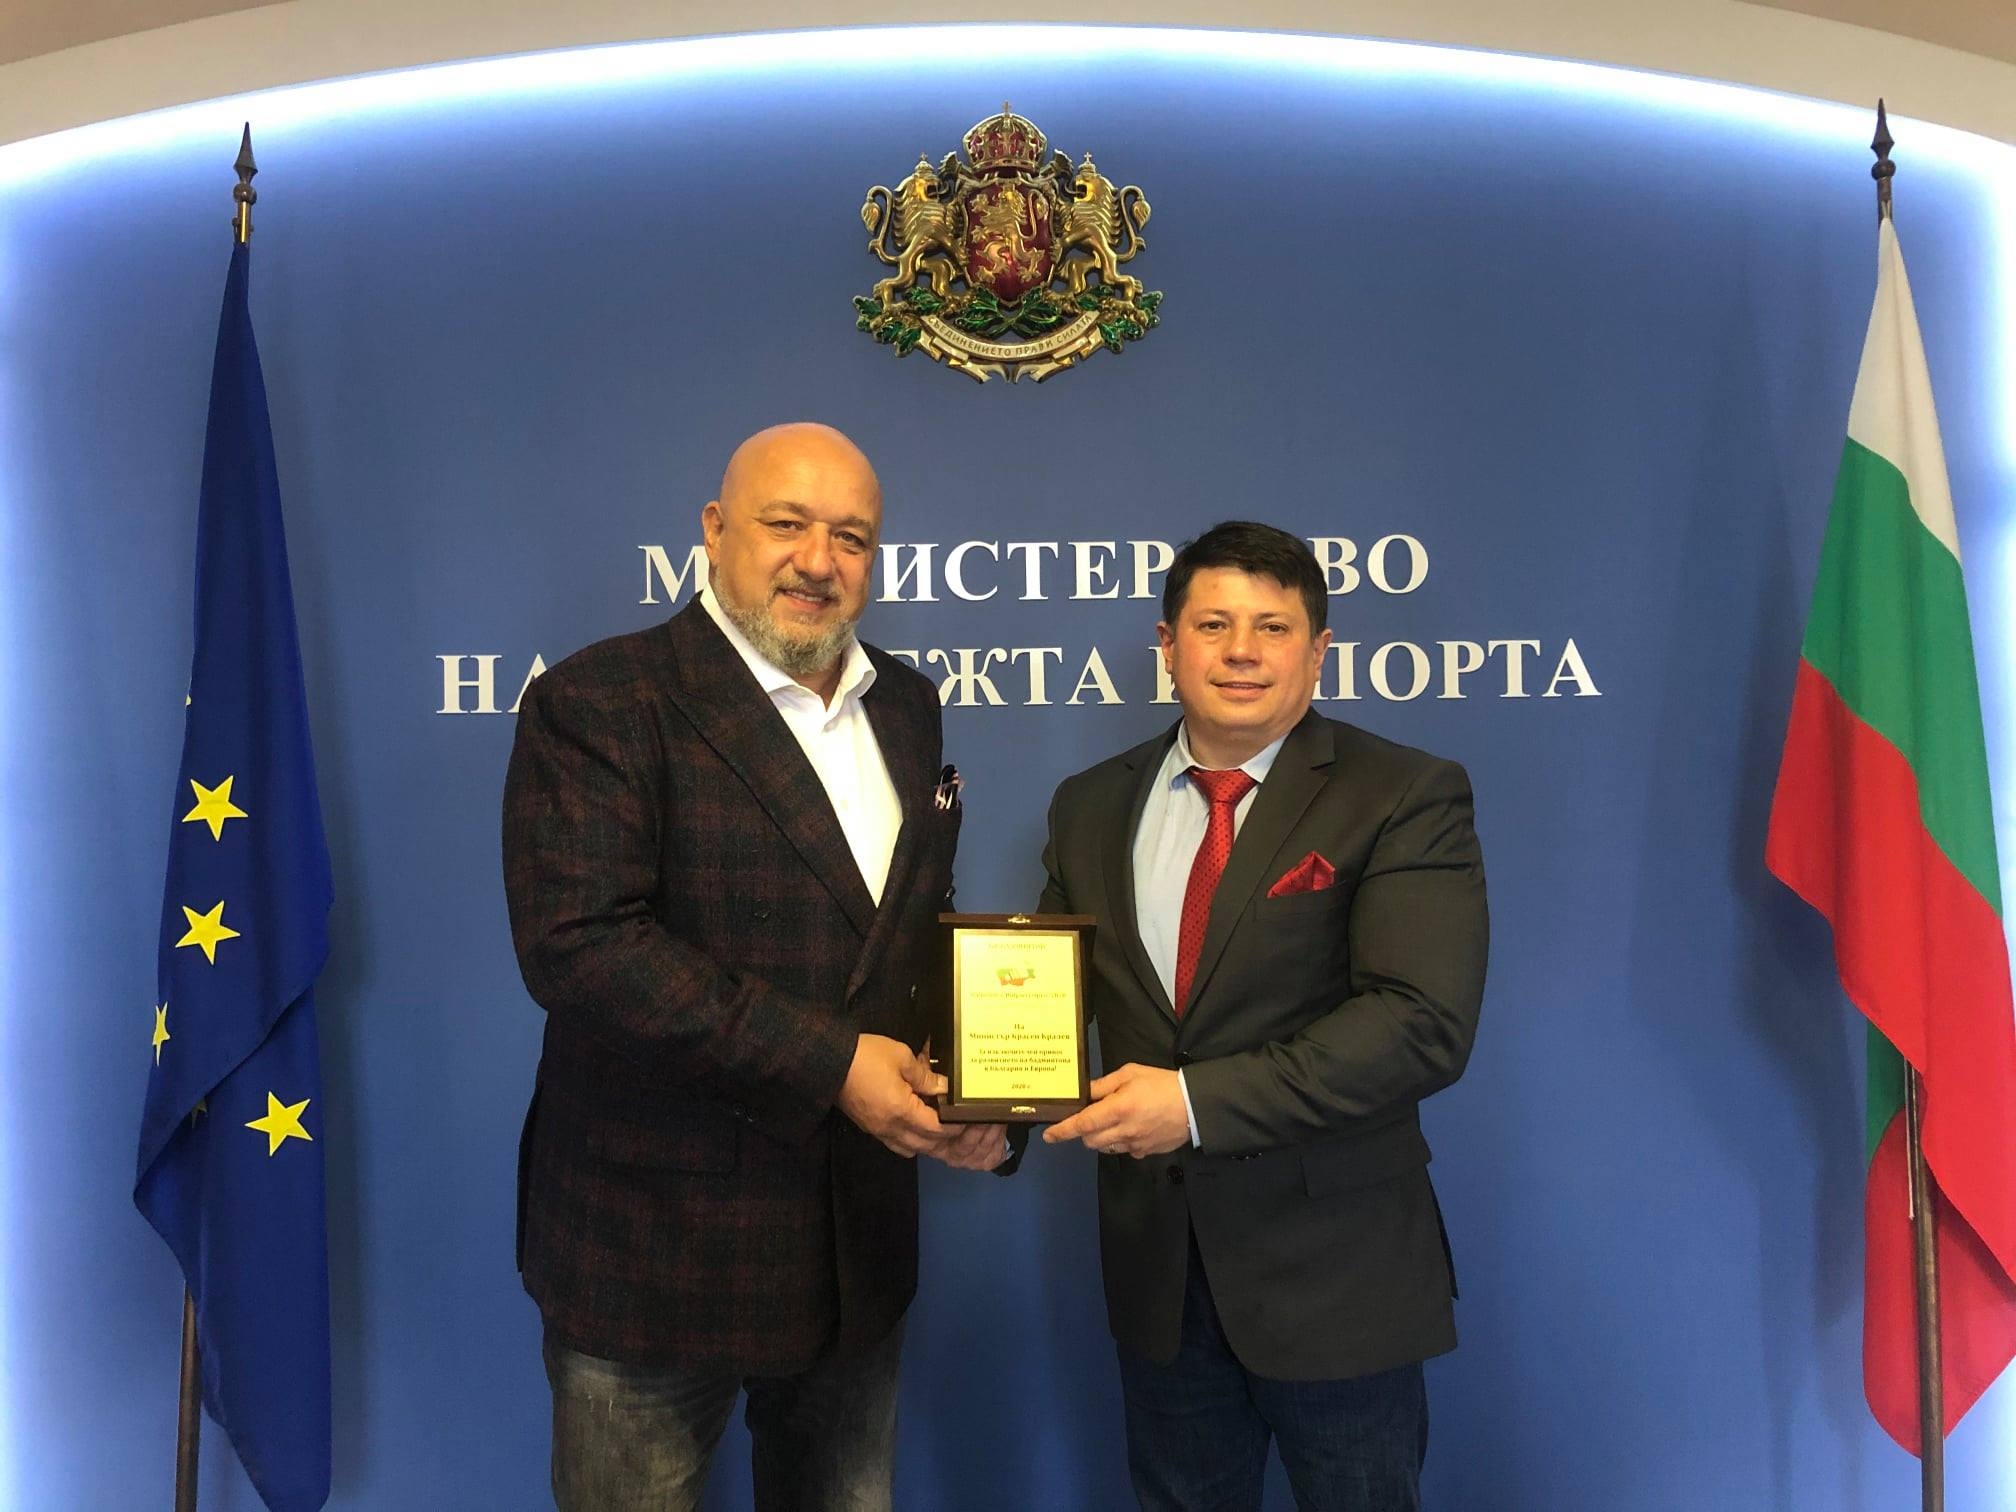 Българската федерация по бадминтон в лицето на председателя д р Володя